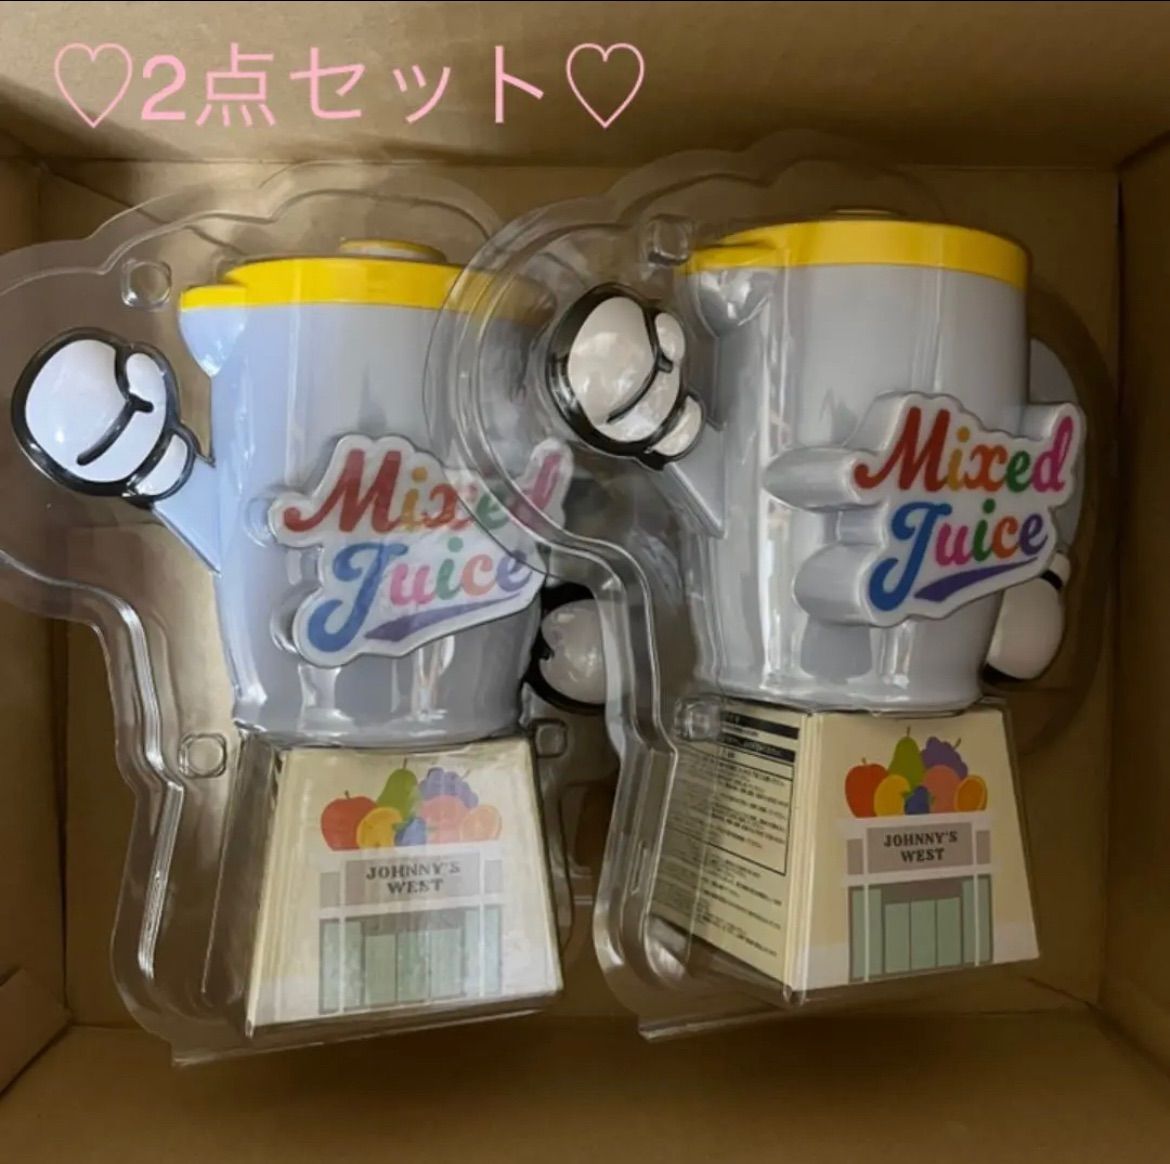 ジャニーズWEST Mixed Juice ペンライト MixedJuice - メルカリ